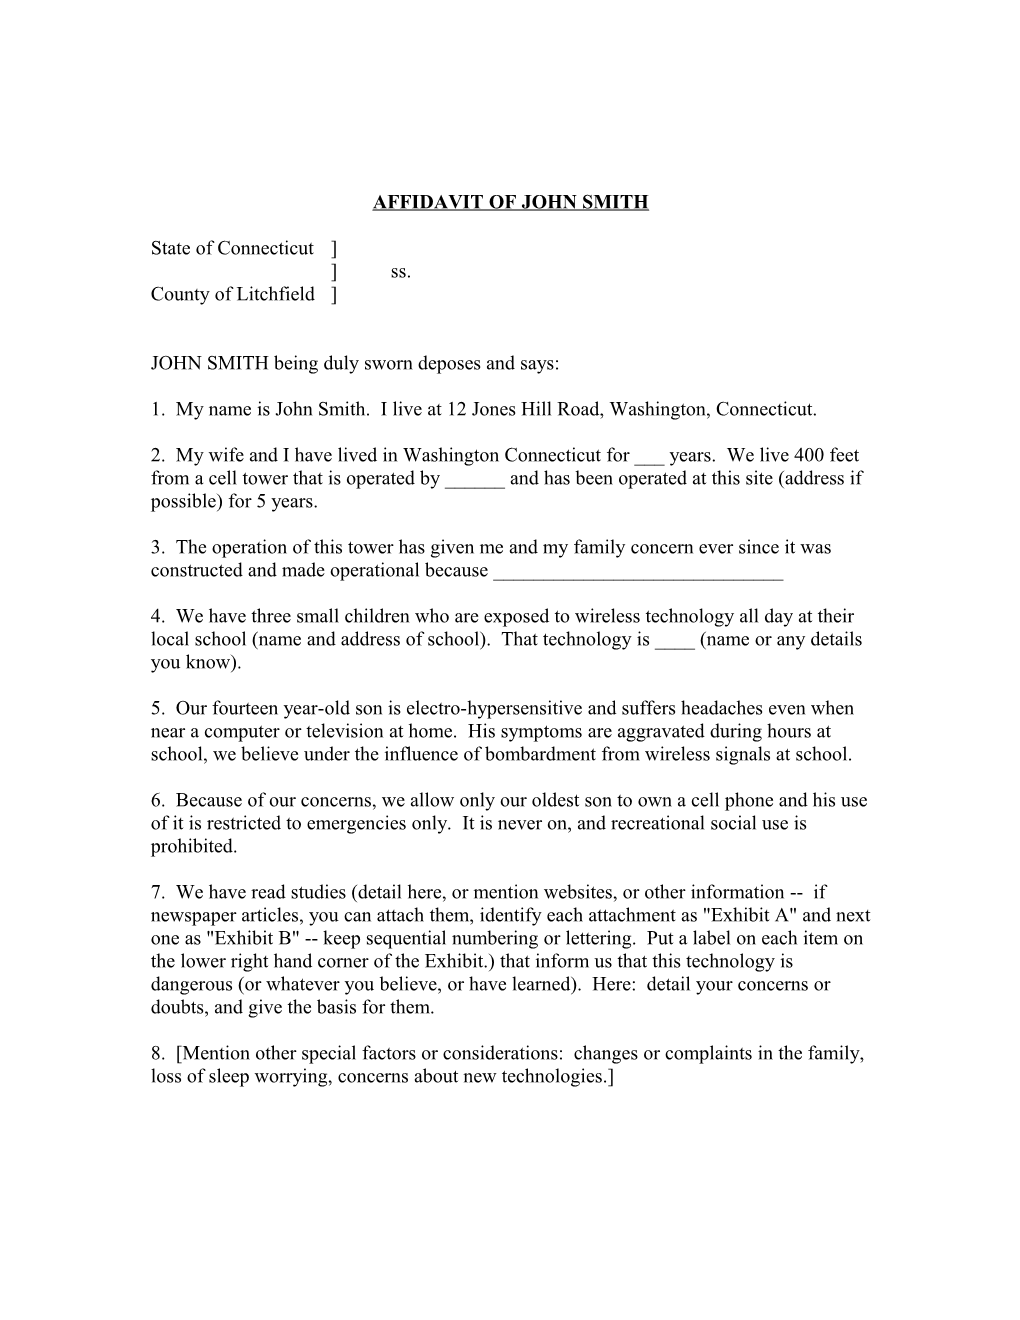 Affidavit of John Smith